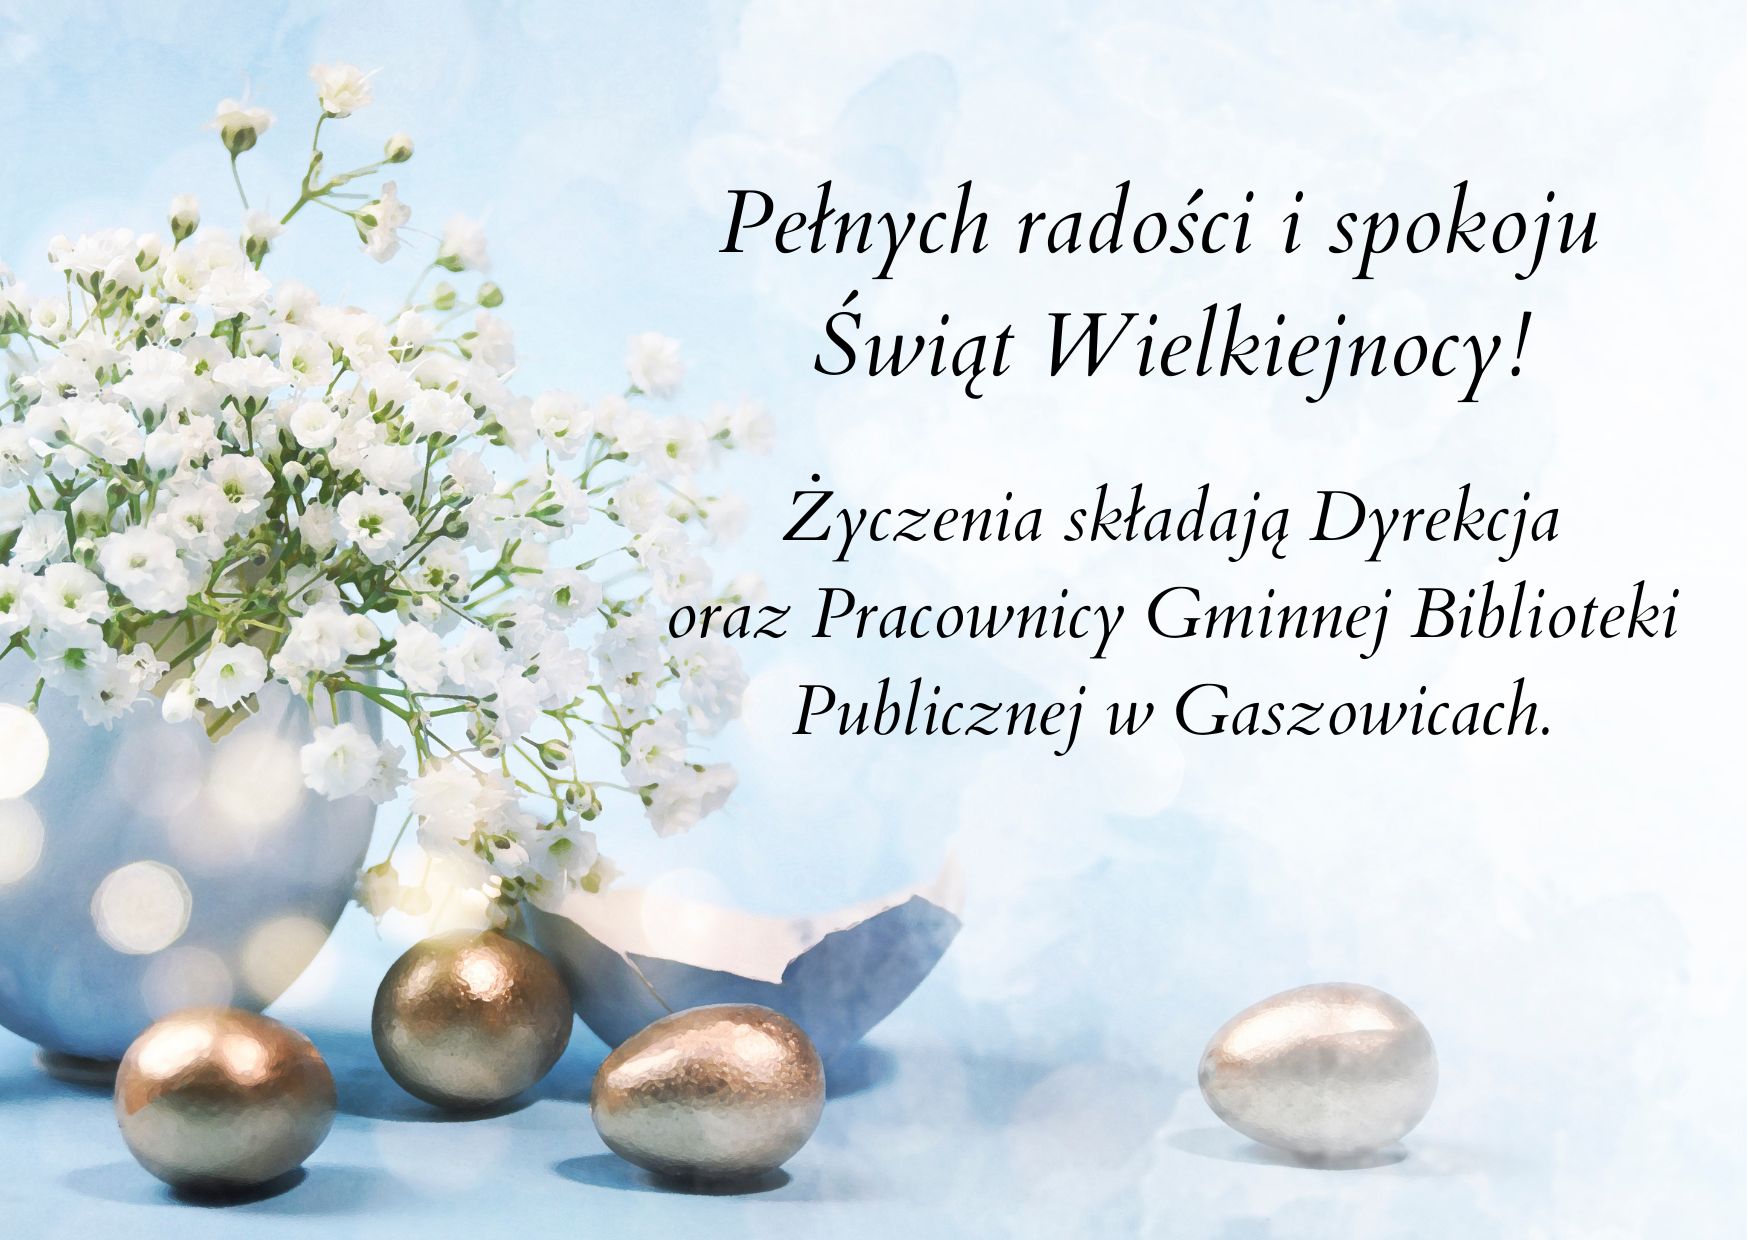 Pełnych radości i spokoju Świąt Wielkiejnocy!
Życzenia składają Dyrekcja oraz Pracownicy Gminnej Biblioteki Publicznej w Gaszowicach.